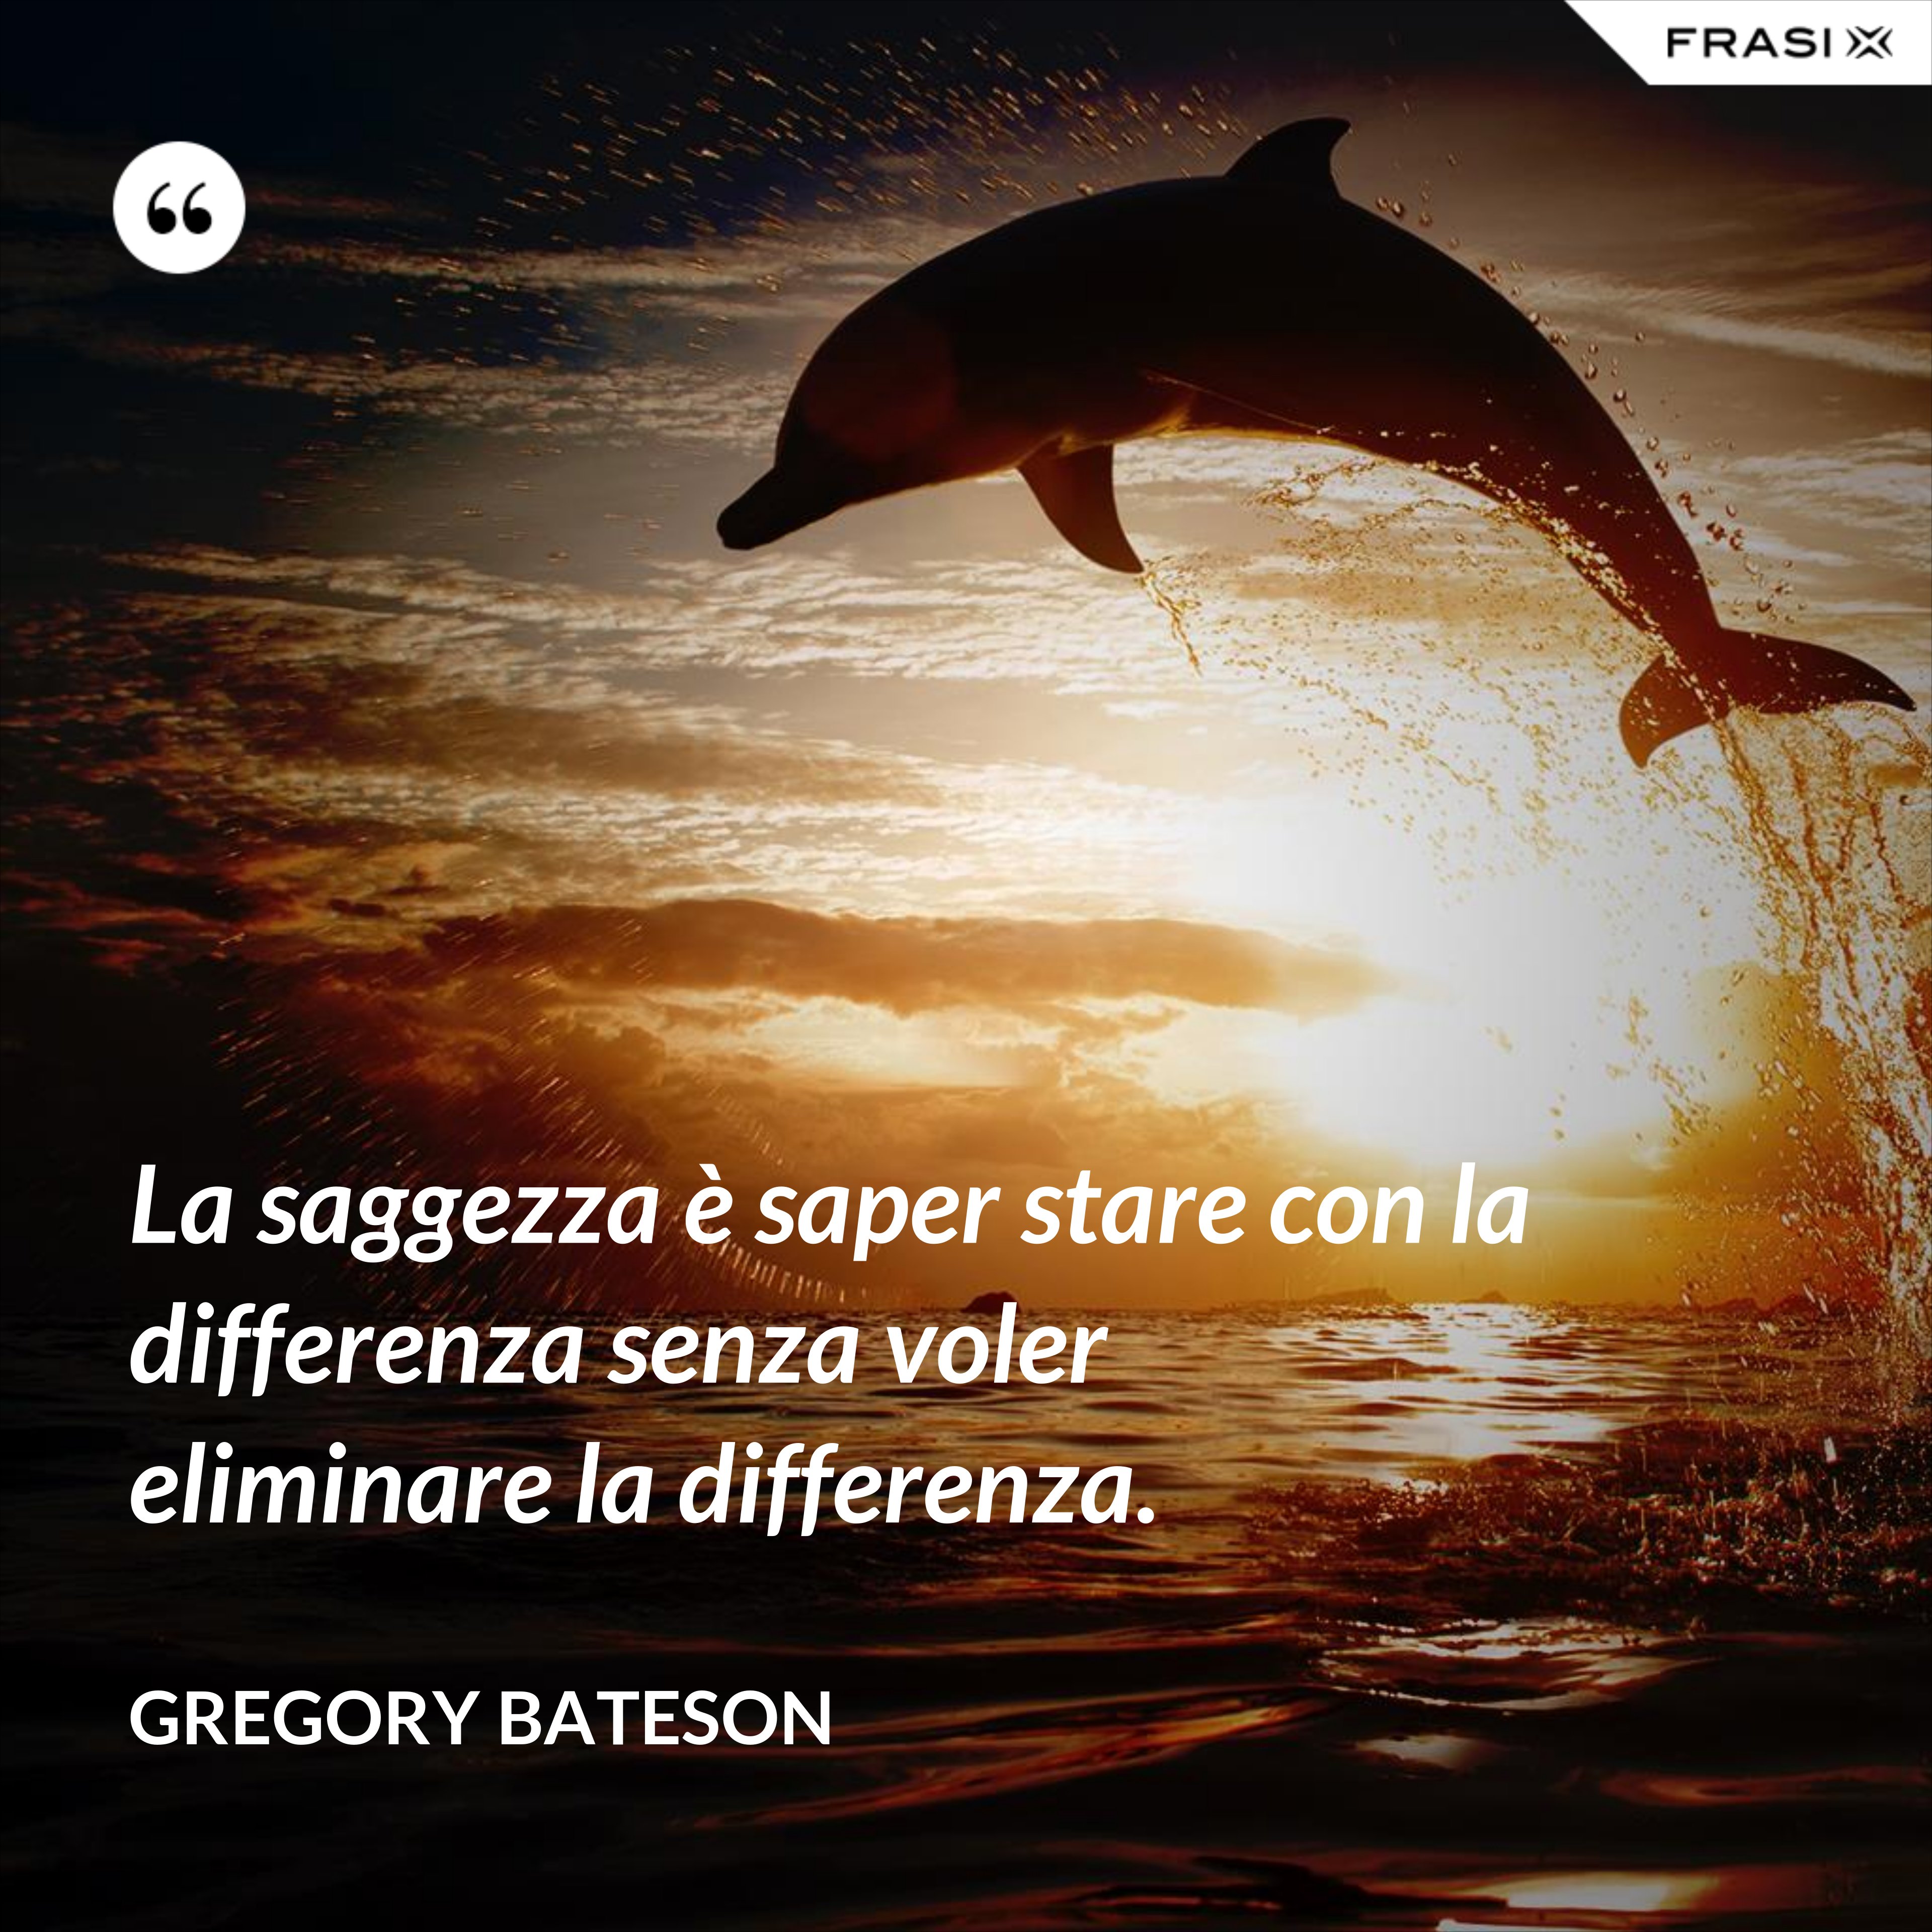 La saggezza è saper stare con la differenza senza voler eliminare la differenza. - Gregory Bateson